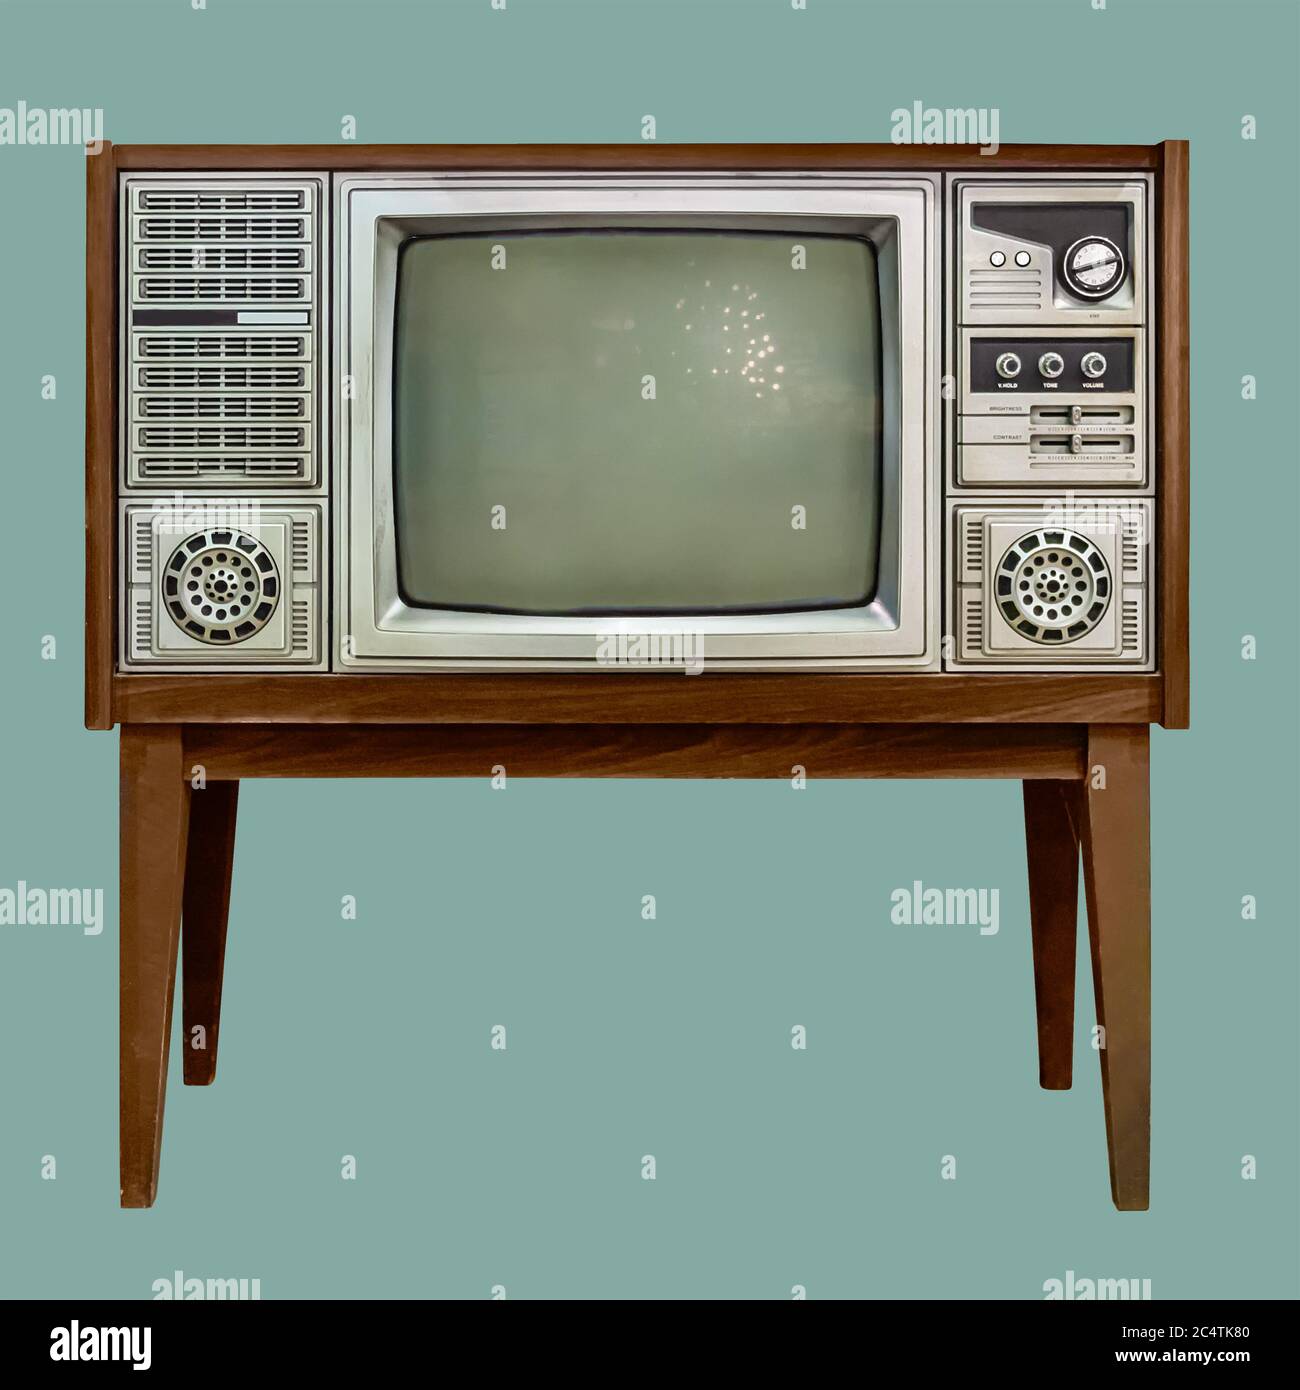 Vintage TV : alte Retro-Fernseher in Holzschrank auf isoliertem grünen  Hintergrund mit Clipping-Pfad Stockfotografie - Alamy